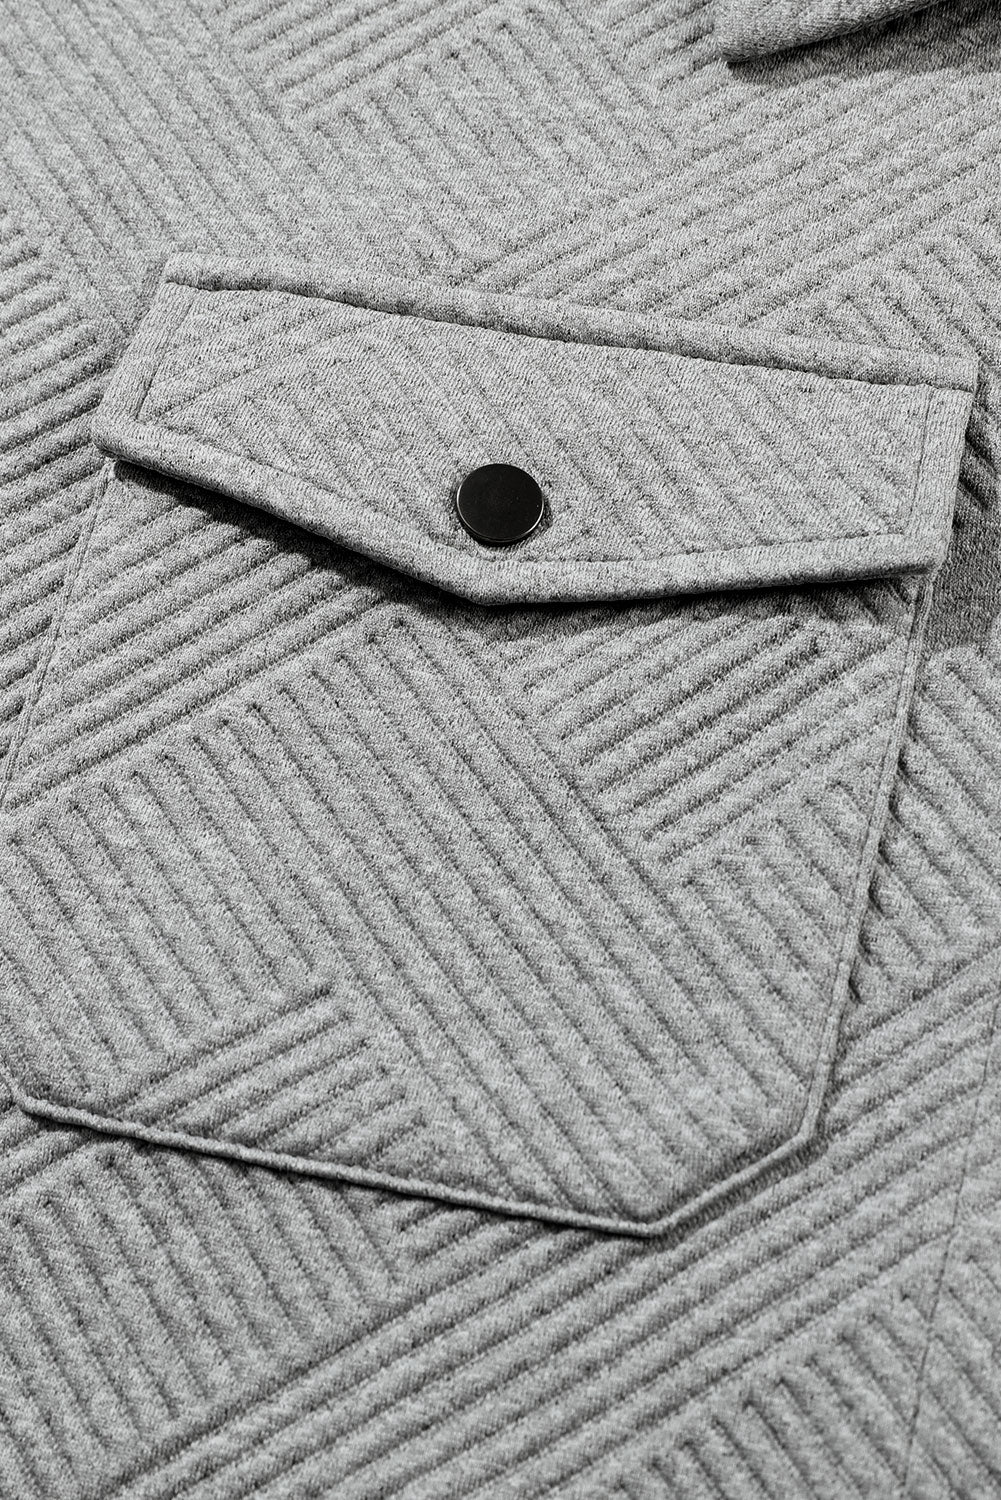 Veste boutonnée noire à poche à rabat texturé uni